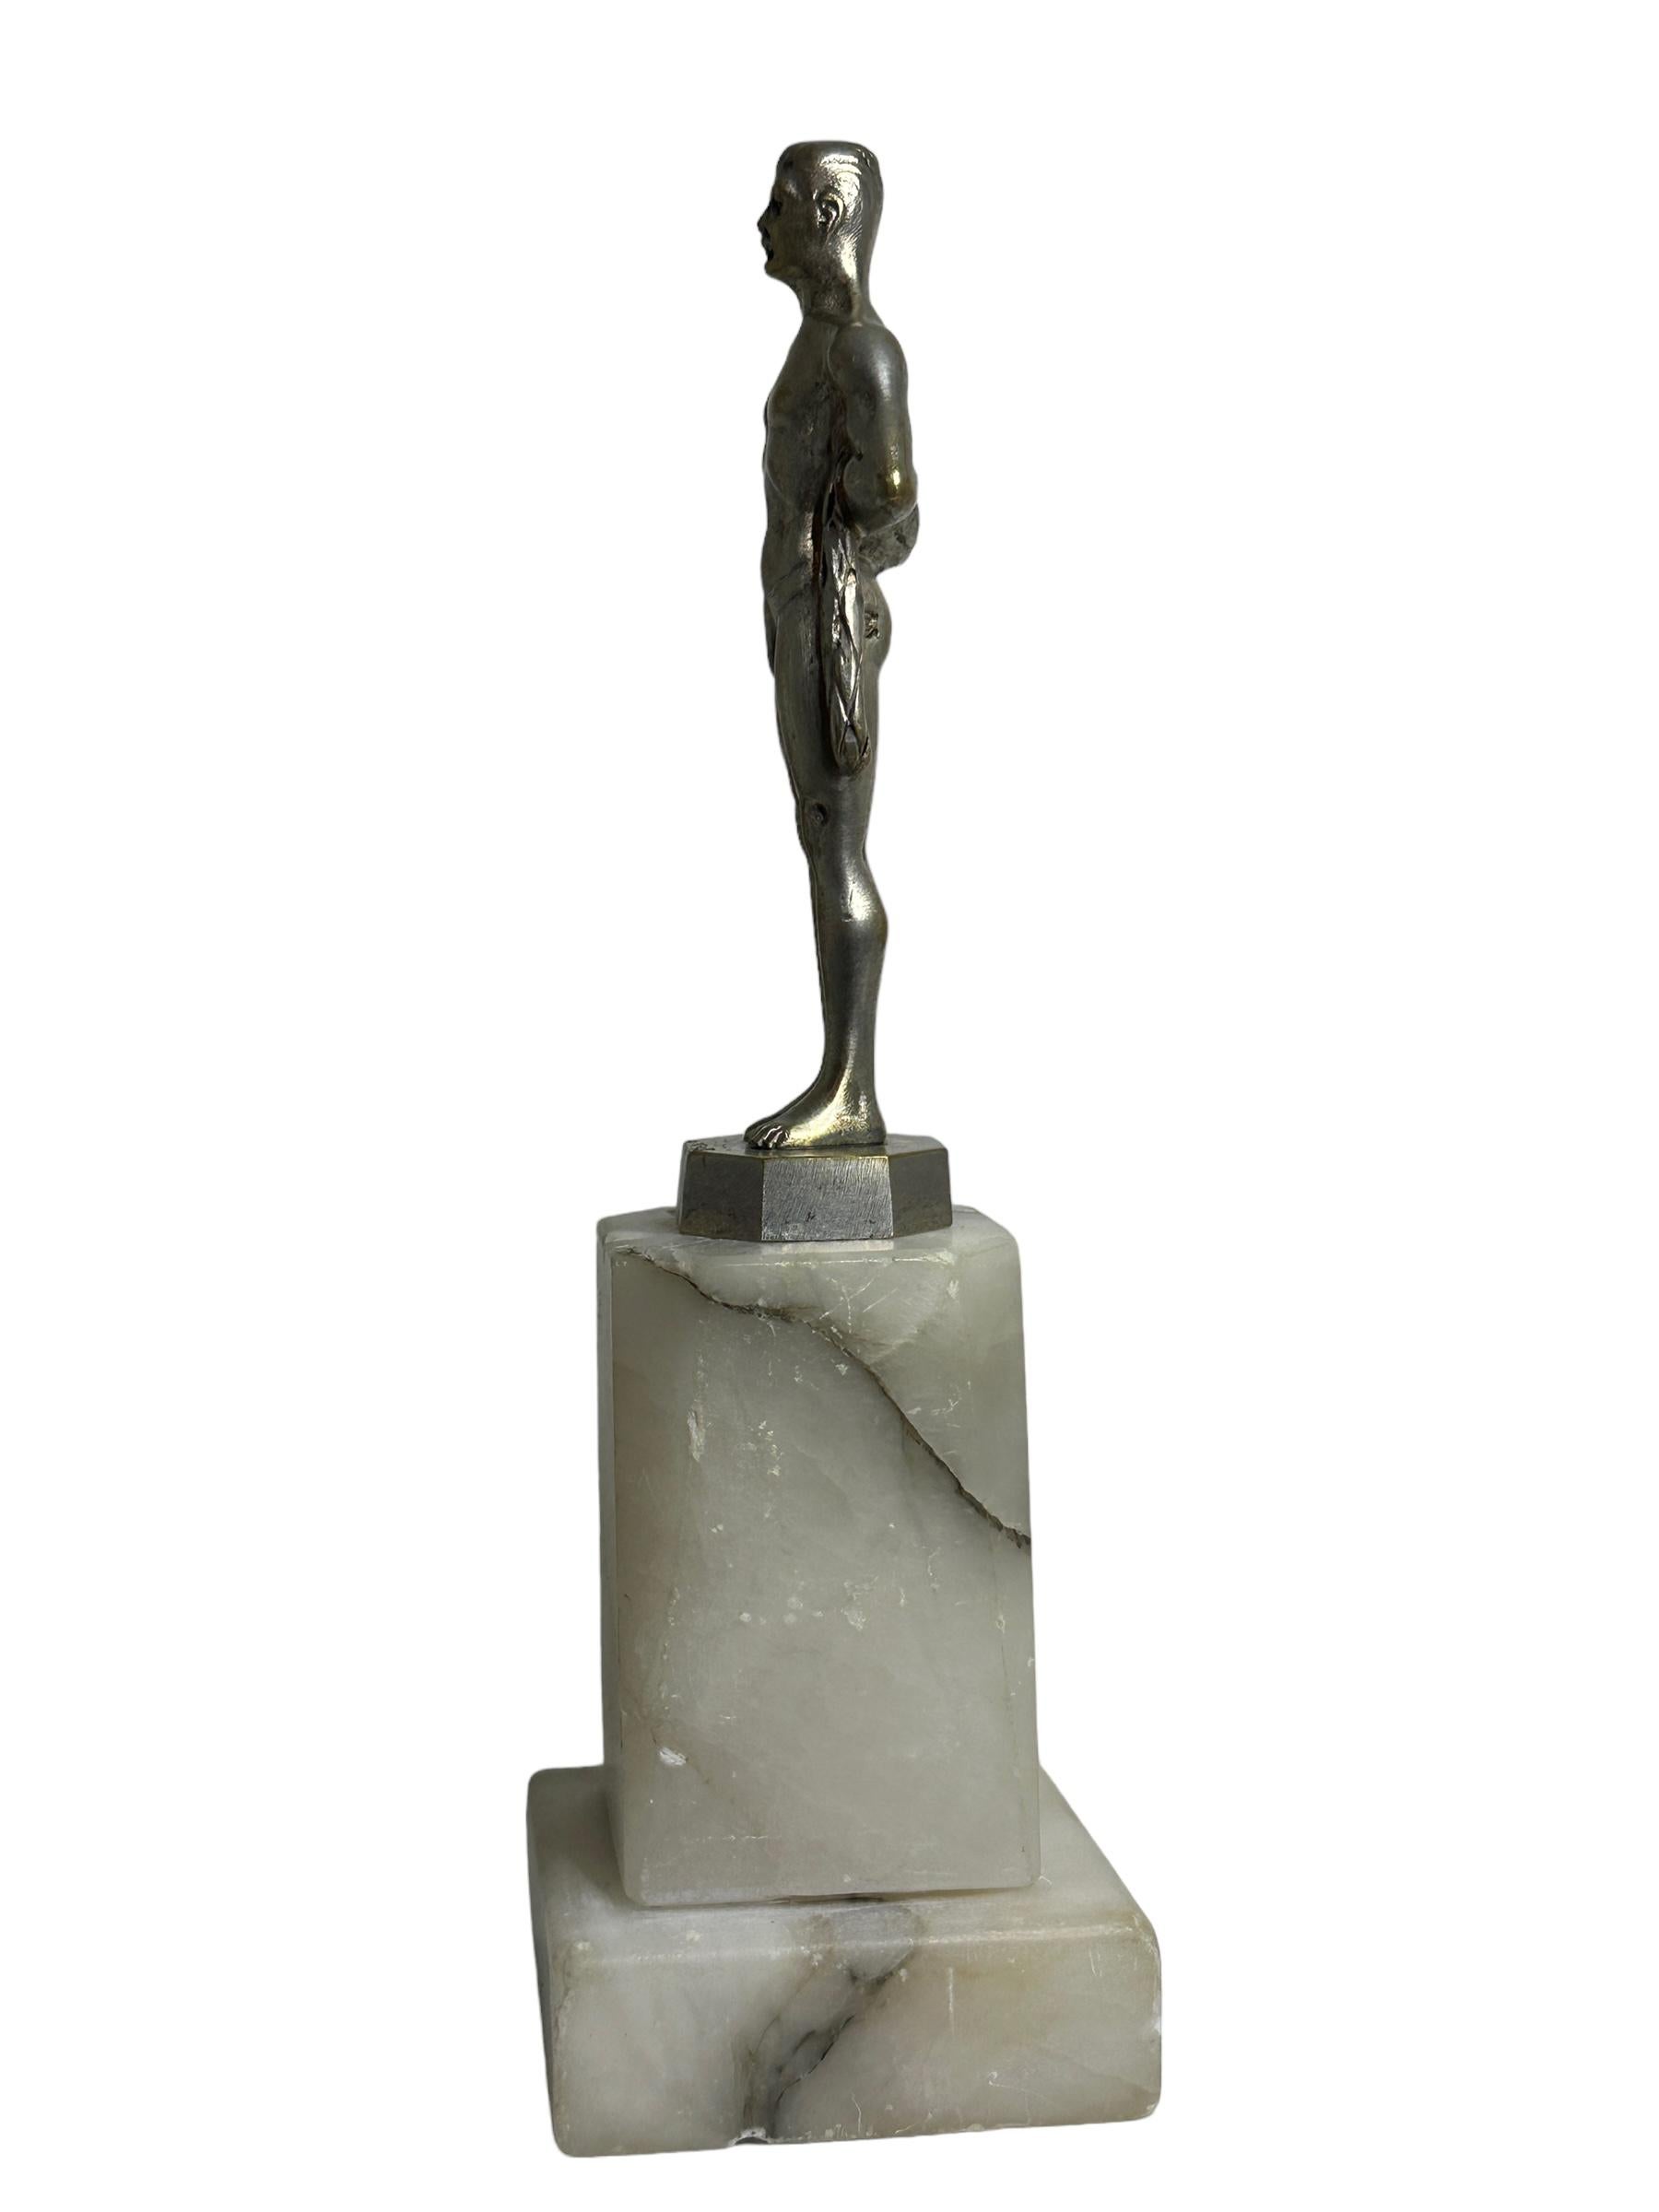 Statue classique en bronze très décorative du sculpteur C. BREHMER représentant un sportif masculin en tenue de sport traditionnelle de l'époque dans une excellente pose naturaliste. La sculpture en bronze est signée par l'artiste C.C. et porte le